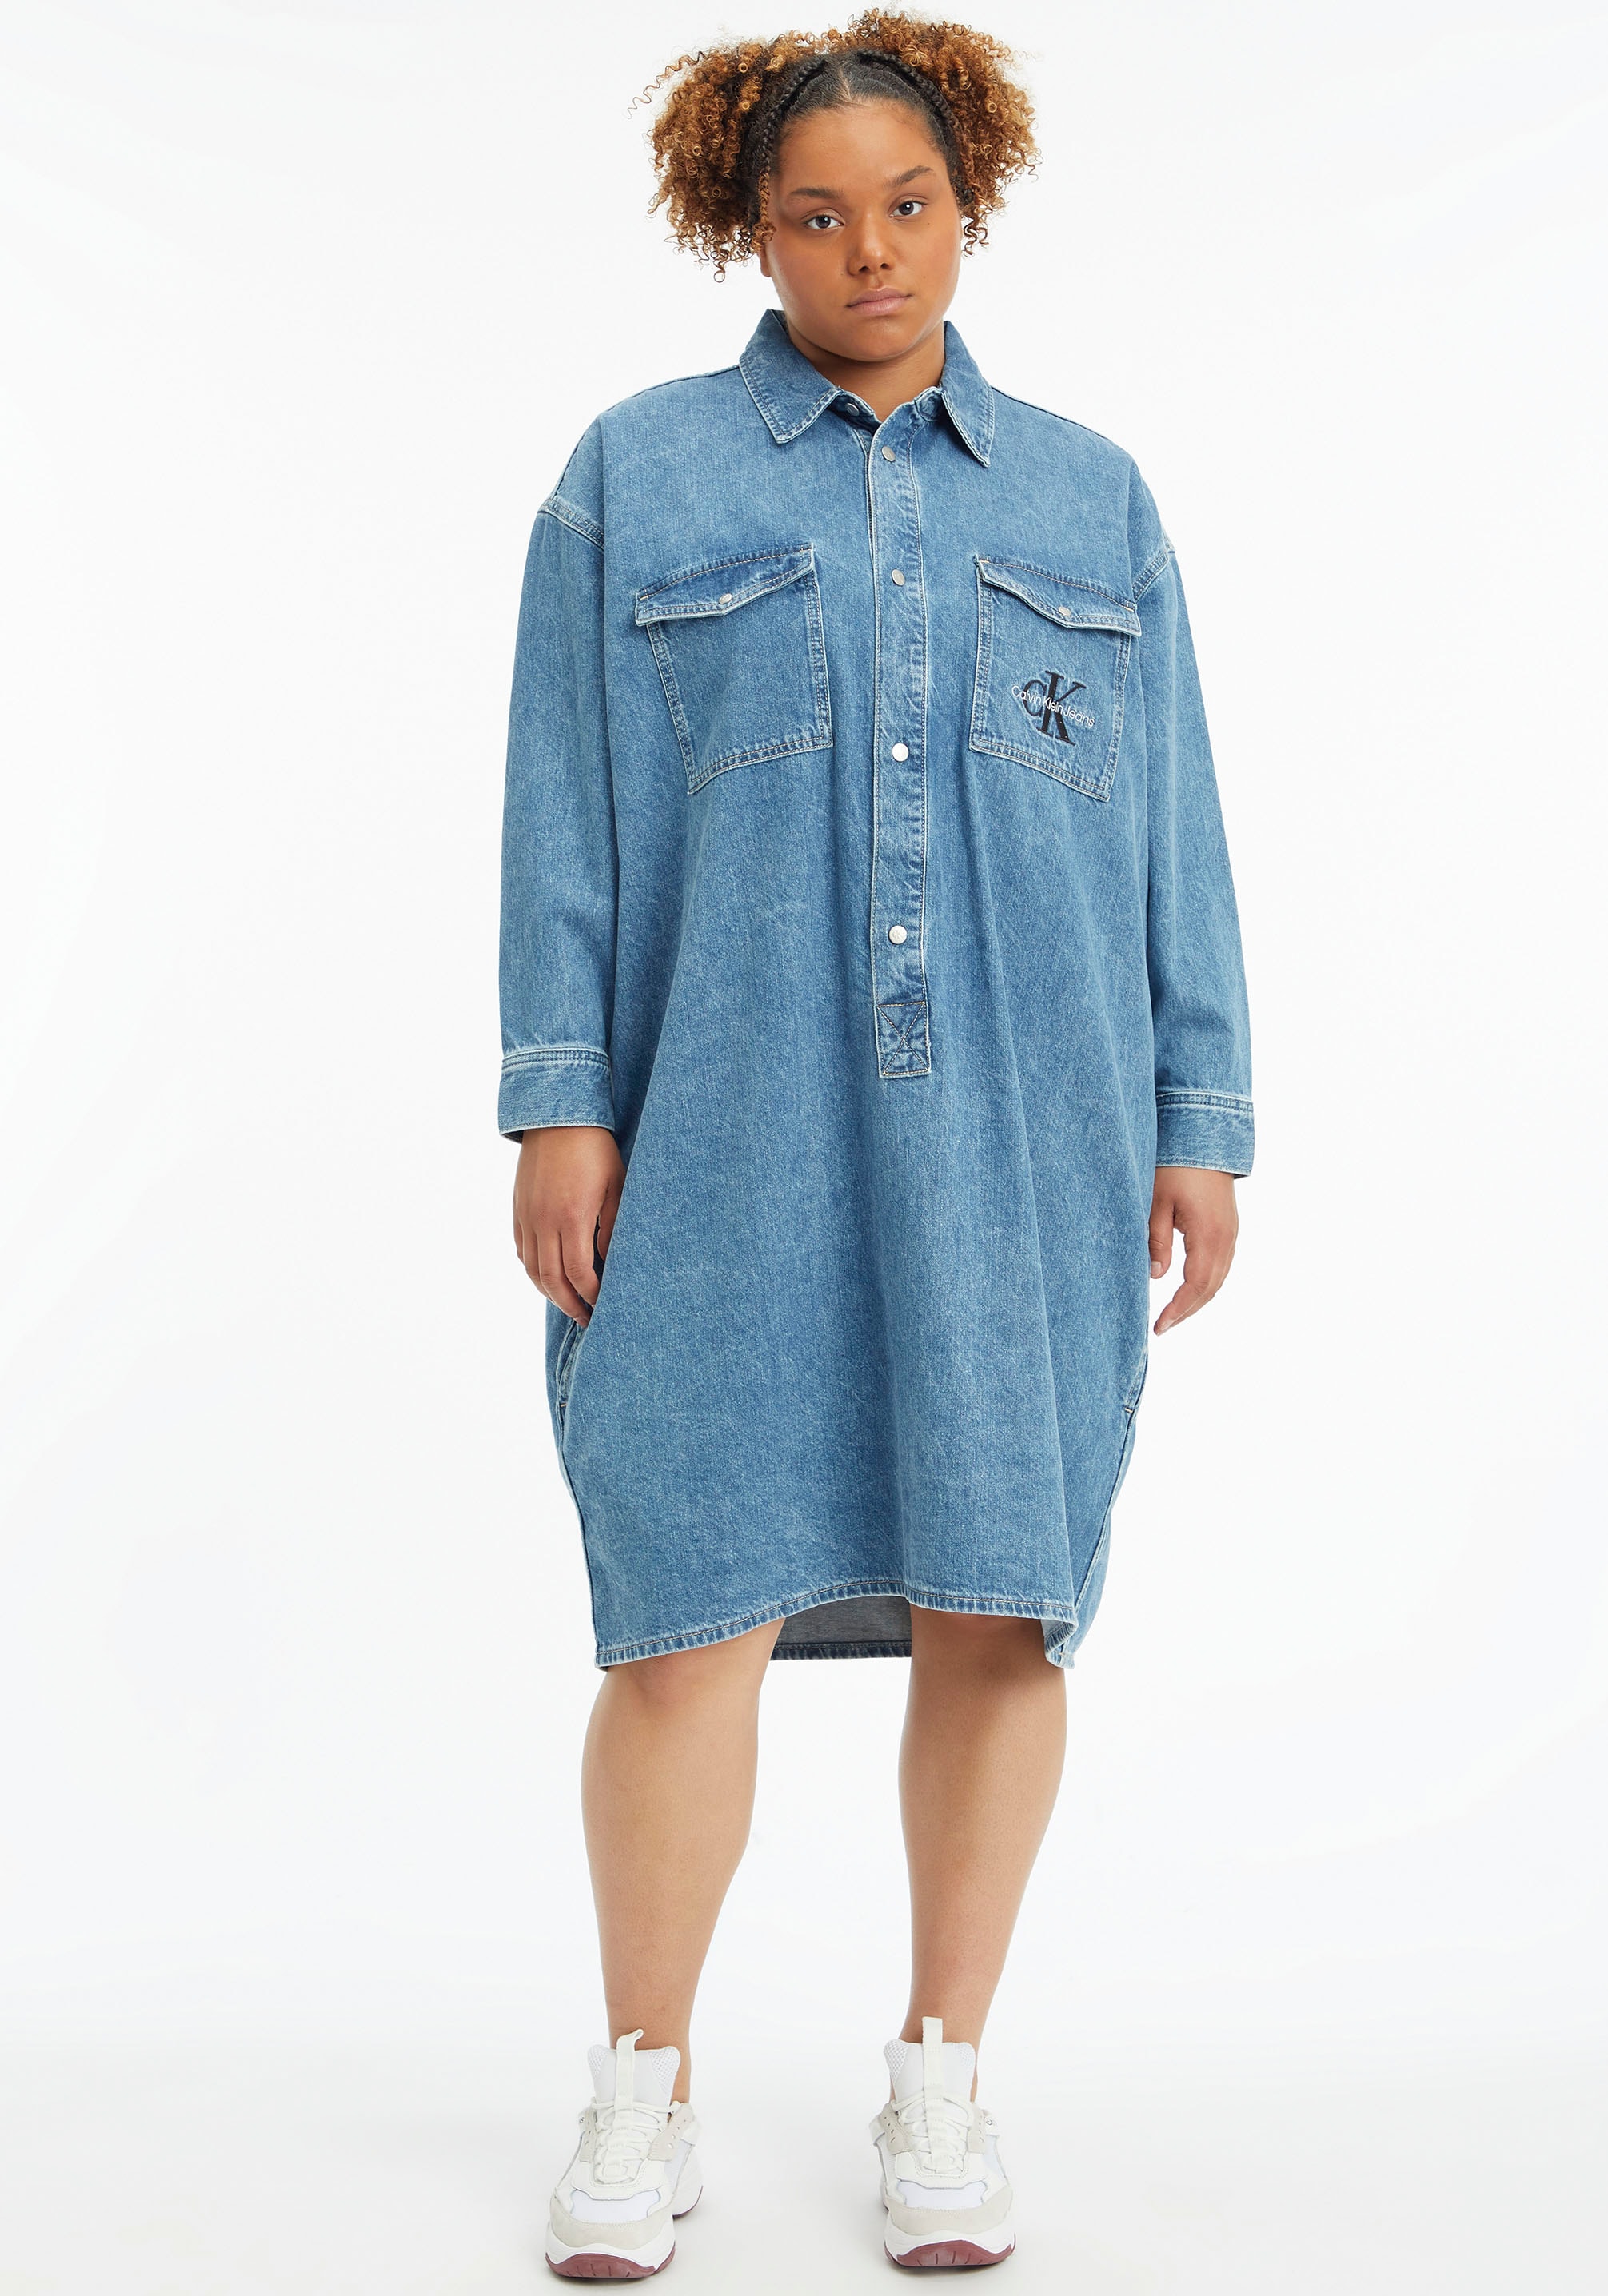 Calvin Klein SHI« »UTILTY Plus versandkostenfrei POPOVER Jeans Jeanskleid kaufen